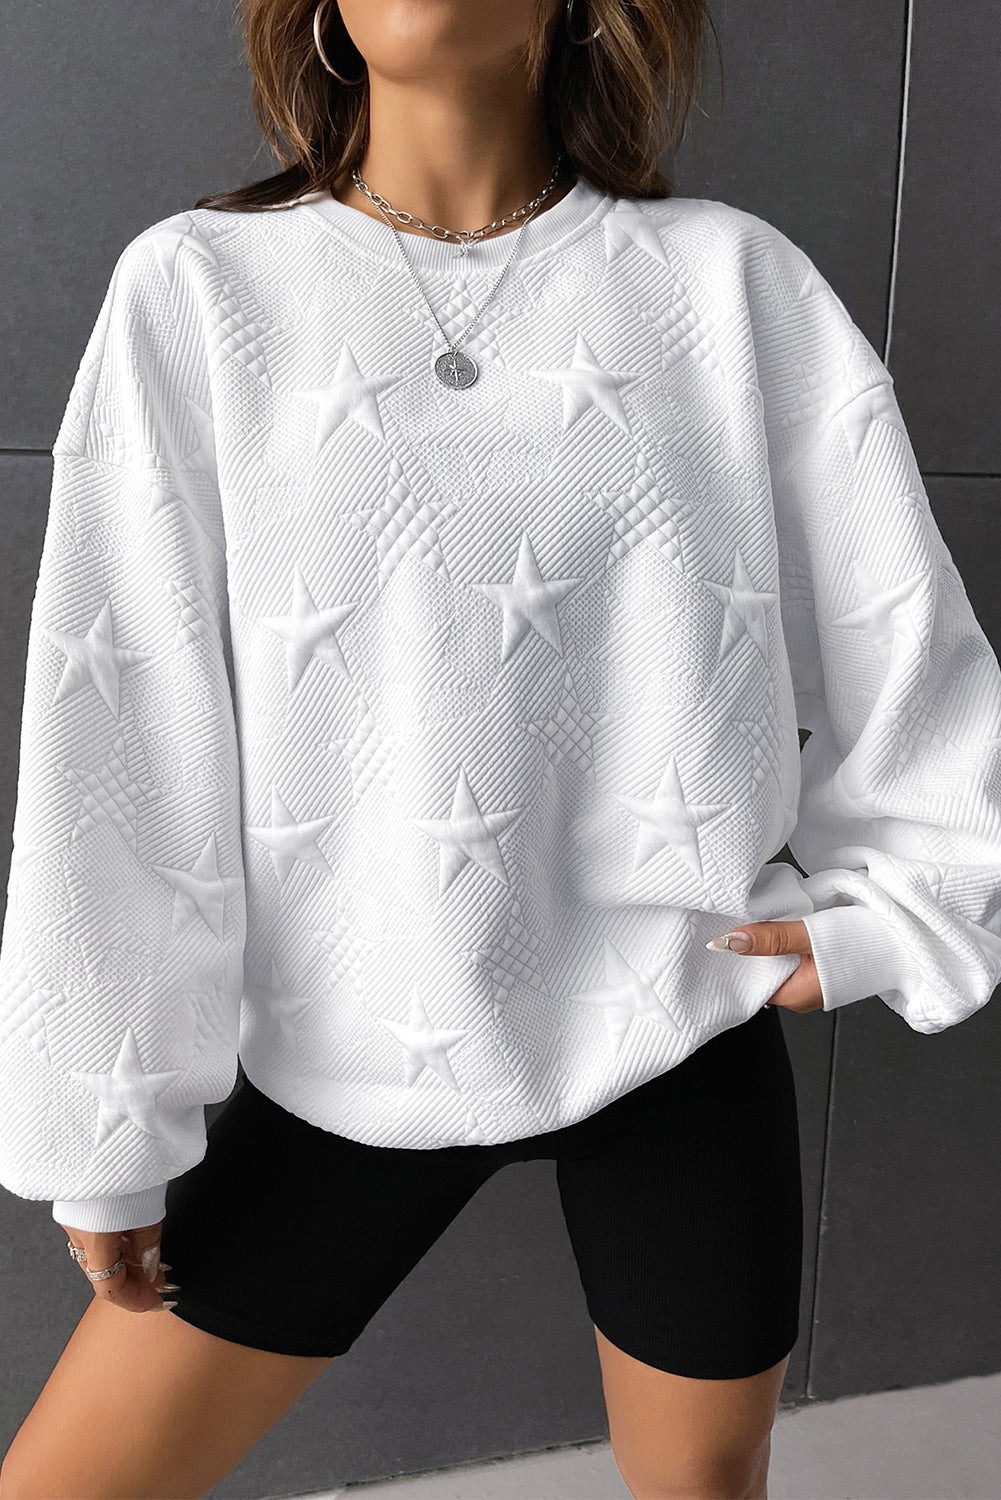 Star Crossed Lover Embossed Sweatshirt